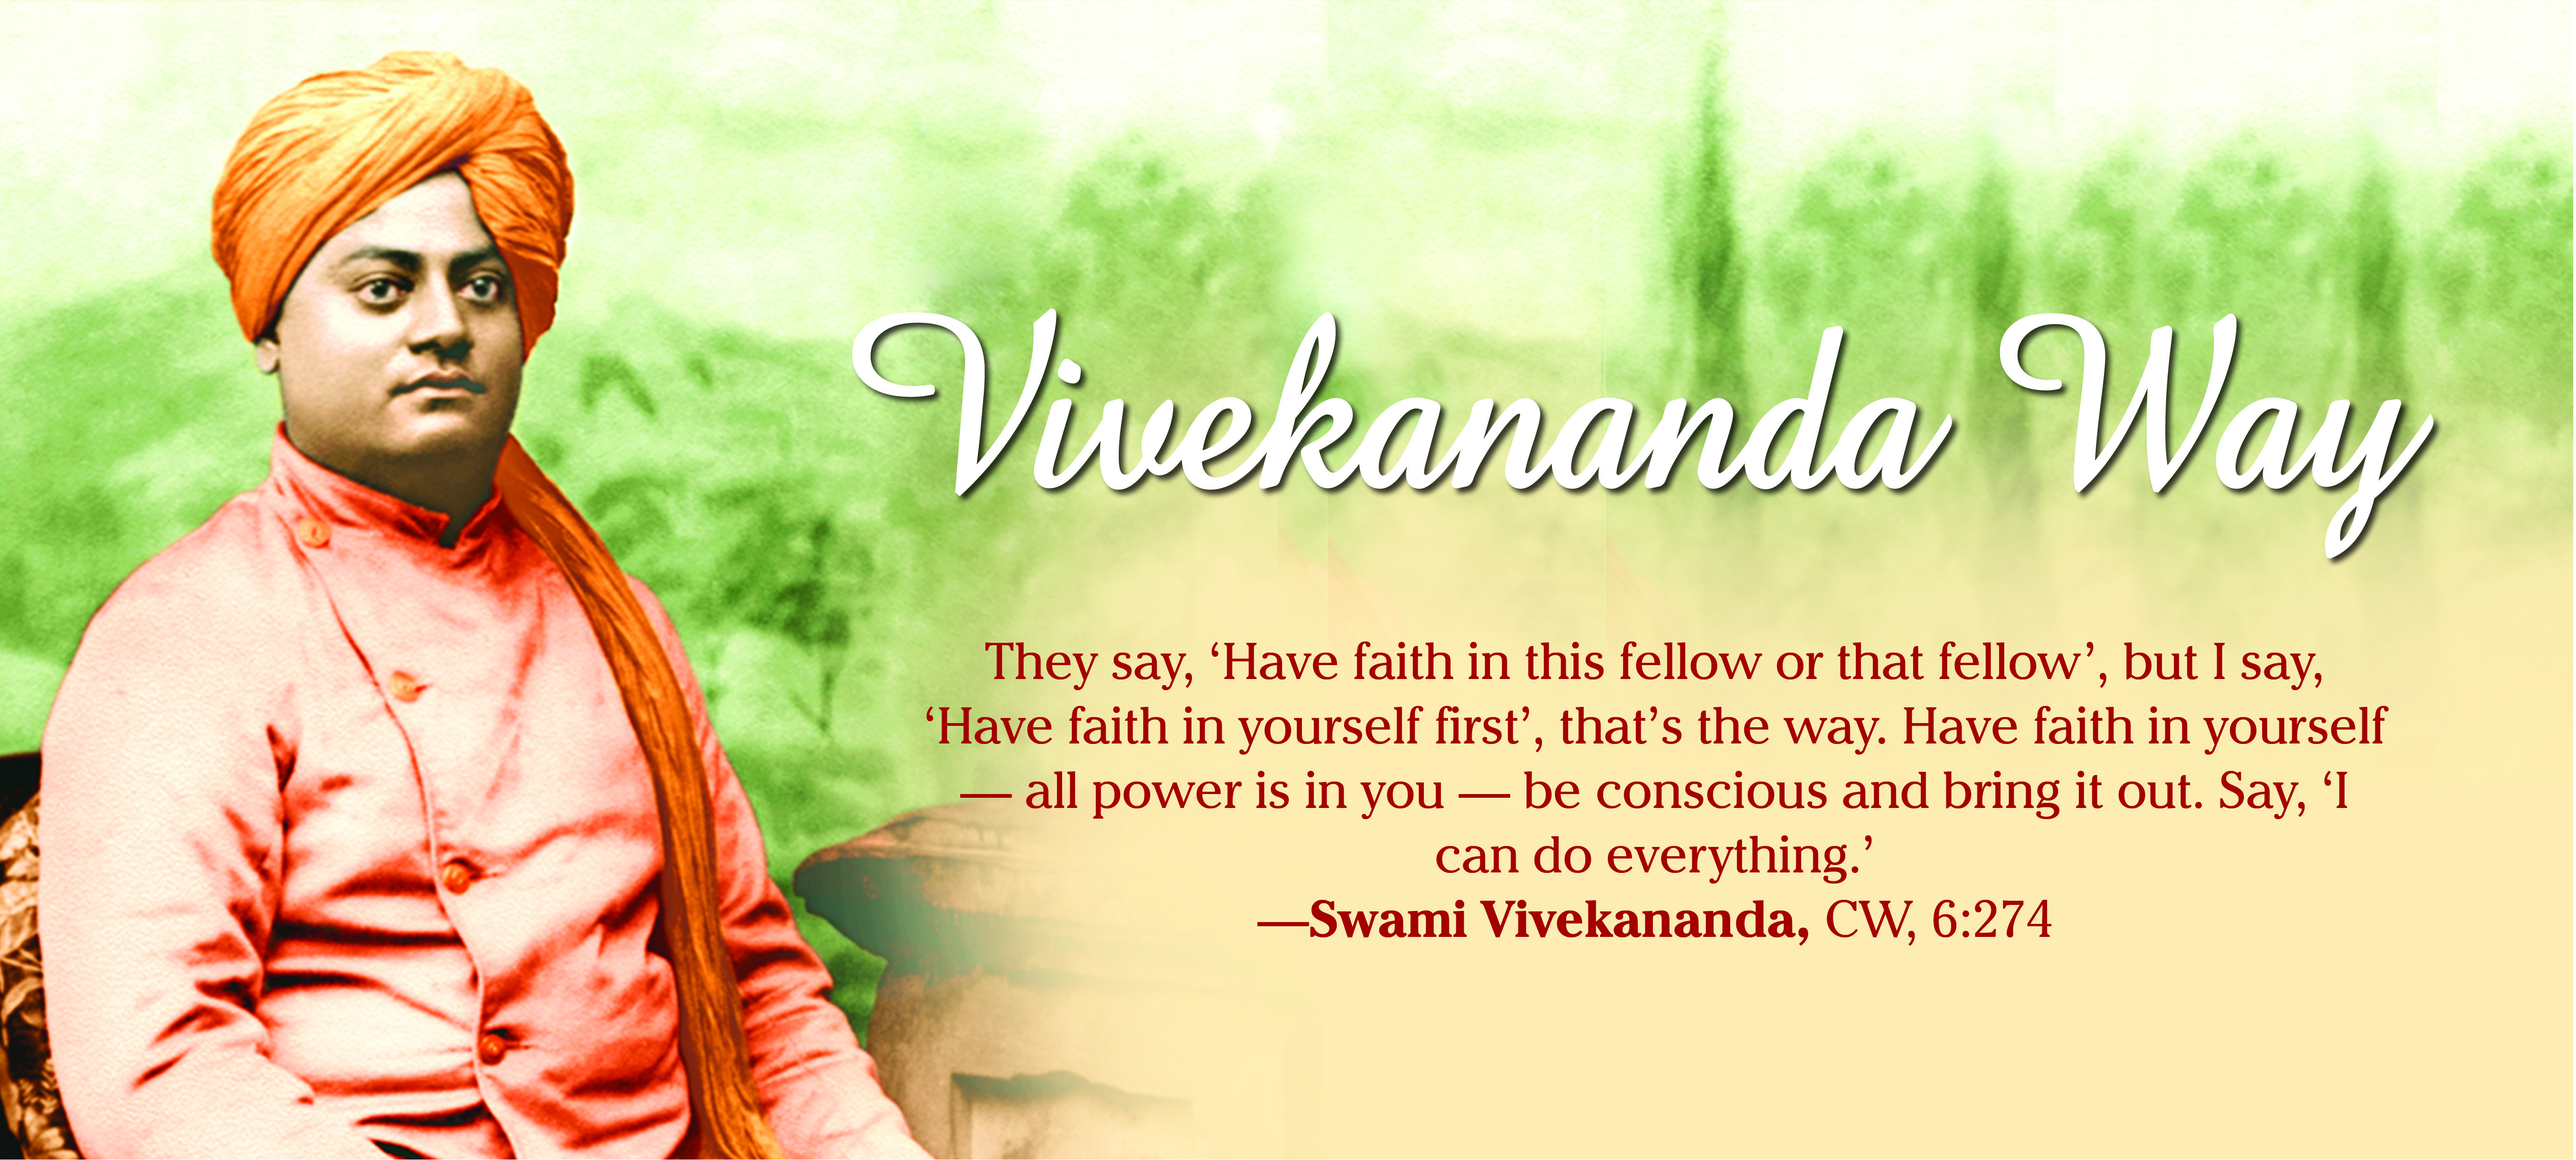 Vivekananda Way